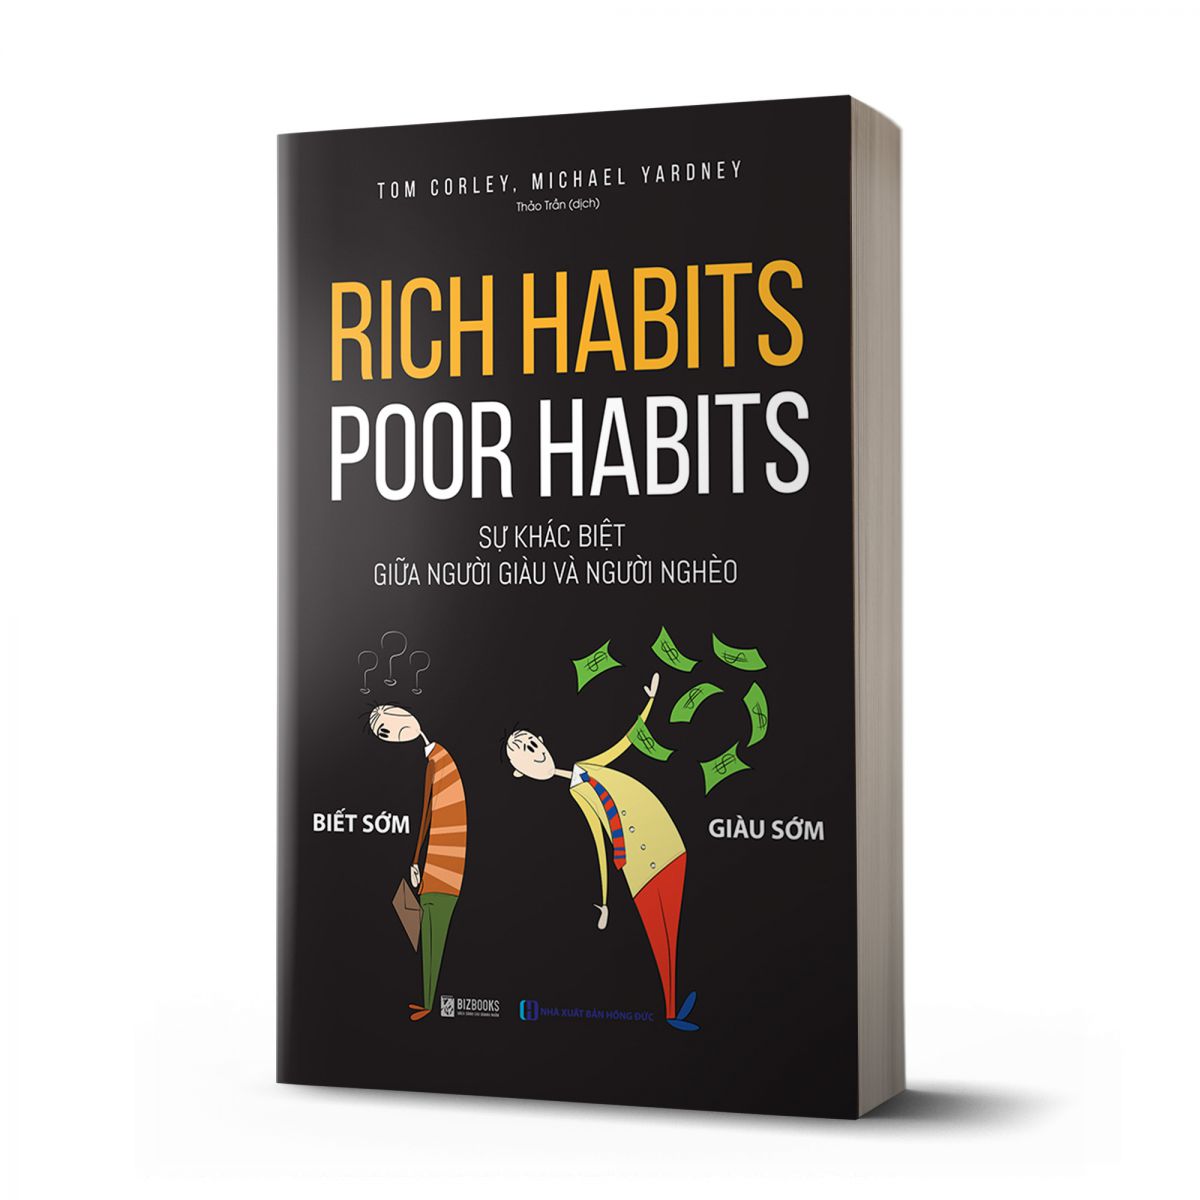 Rich habits, poor habits: Sự khác biệt giữa người giàu và người nghèo 1 